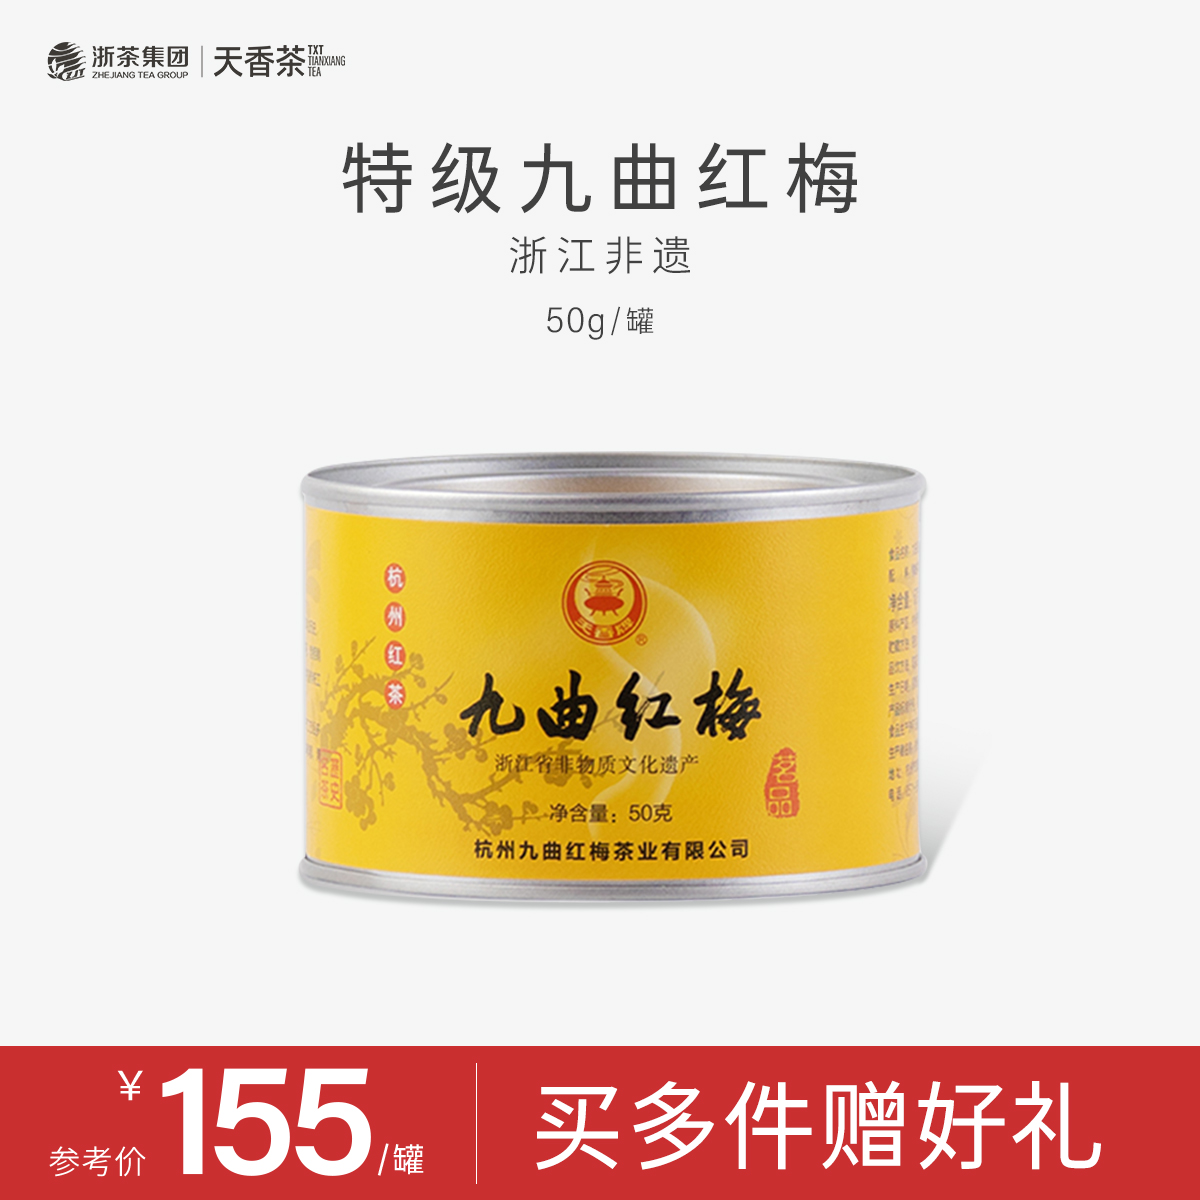 【经典回归】天香牌特级九曲红梅50g罐装 杭州特产龙井红茶新茶